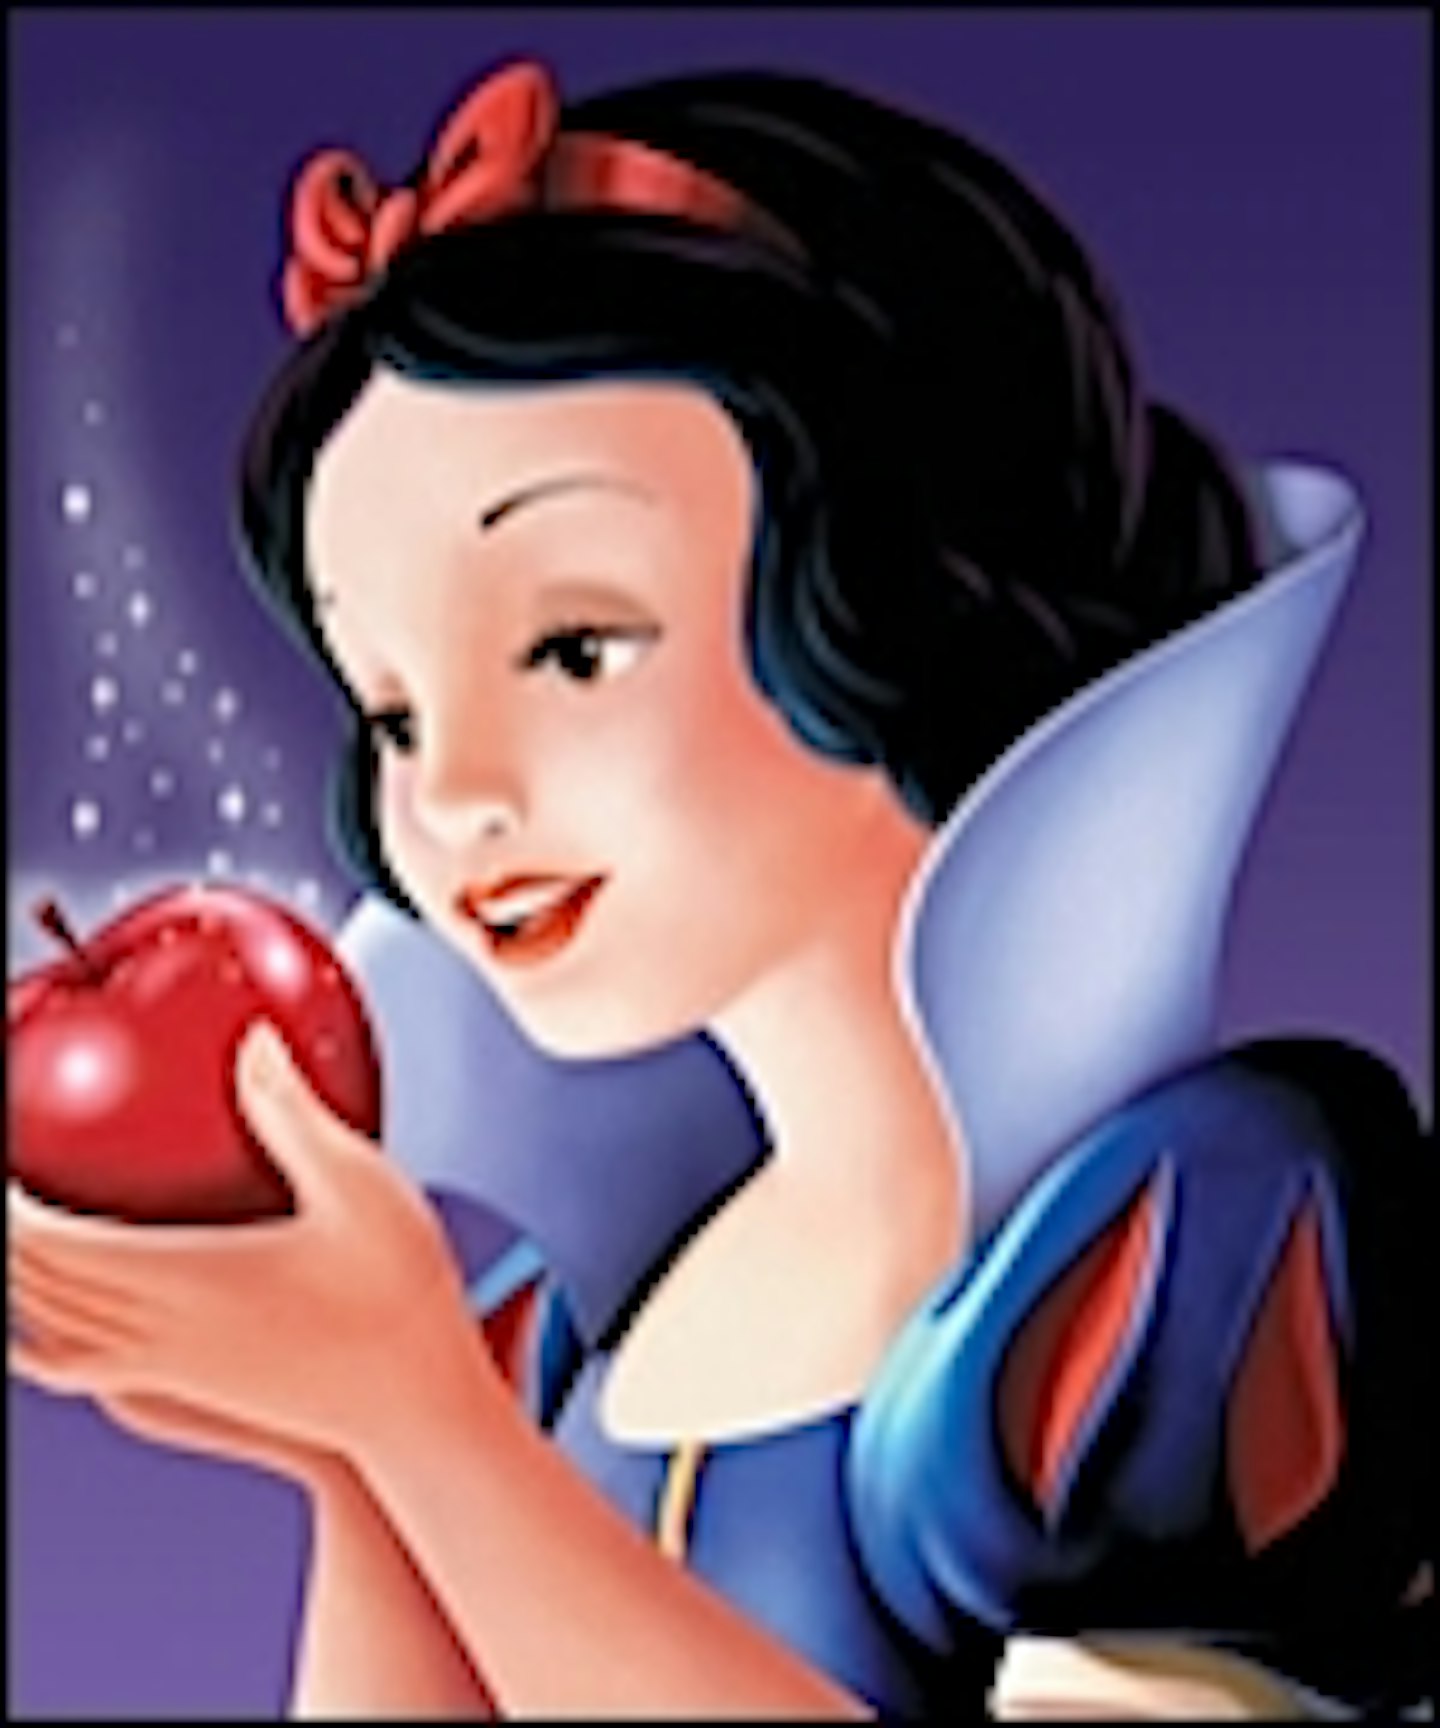 Universal Nabs New Take On Snow White